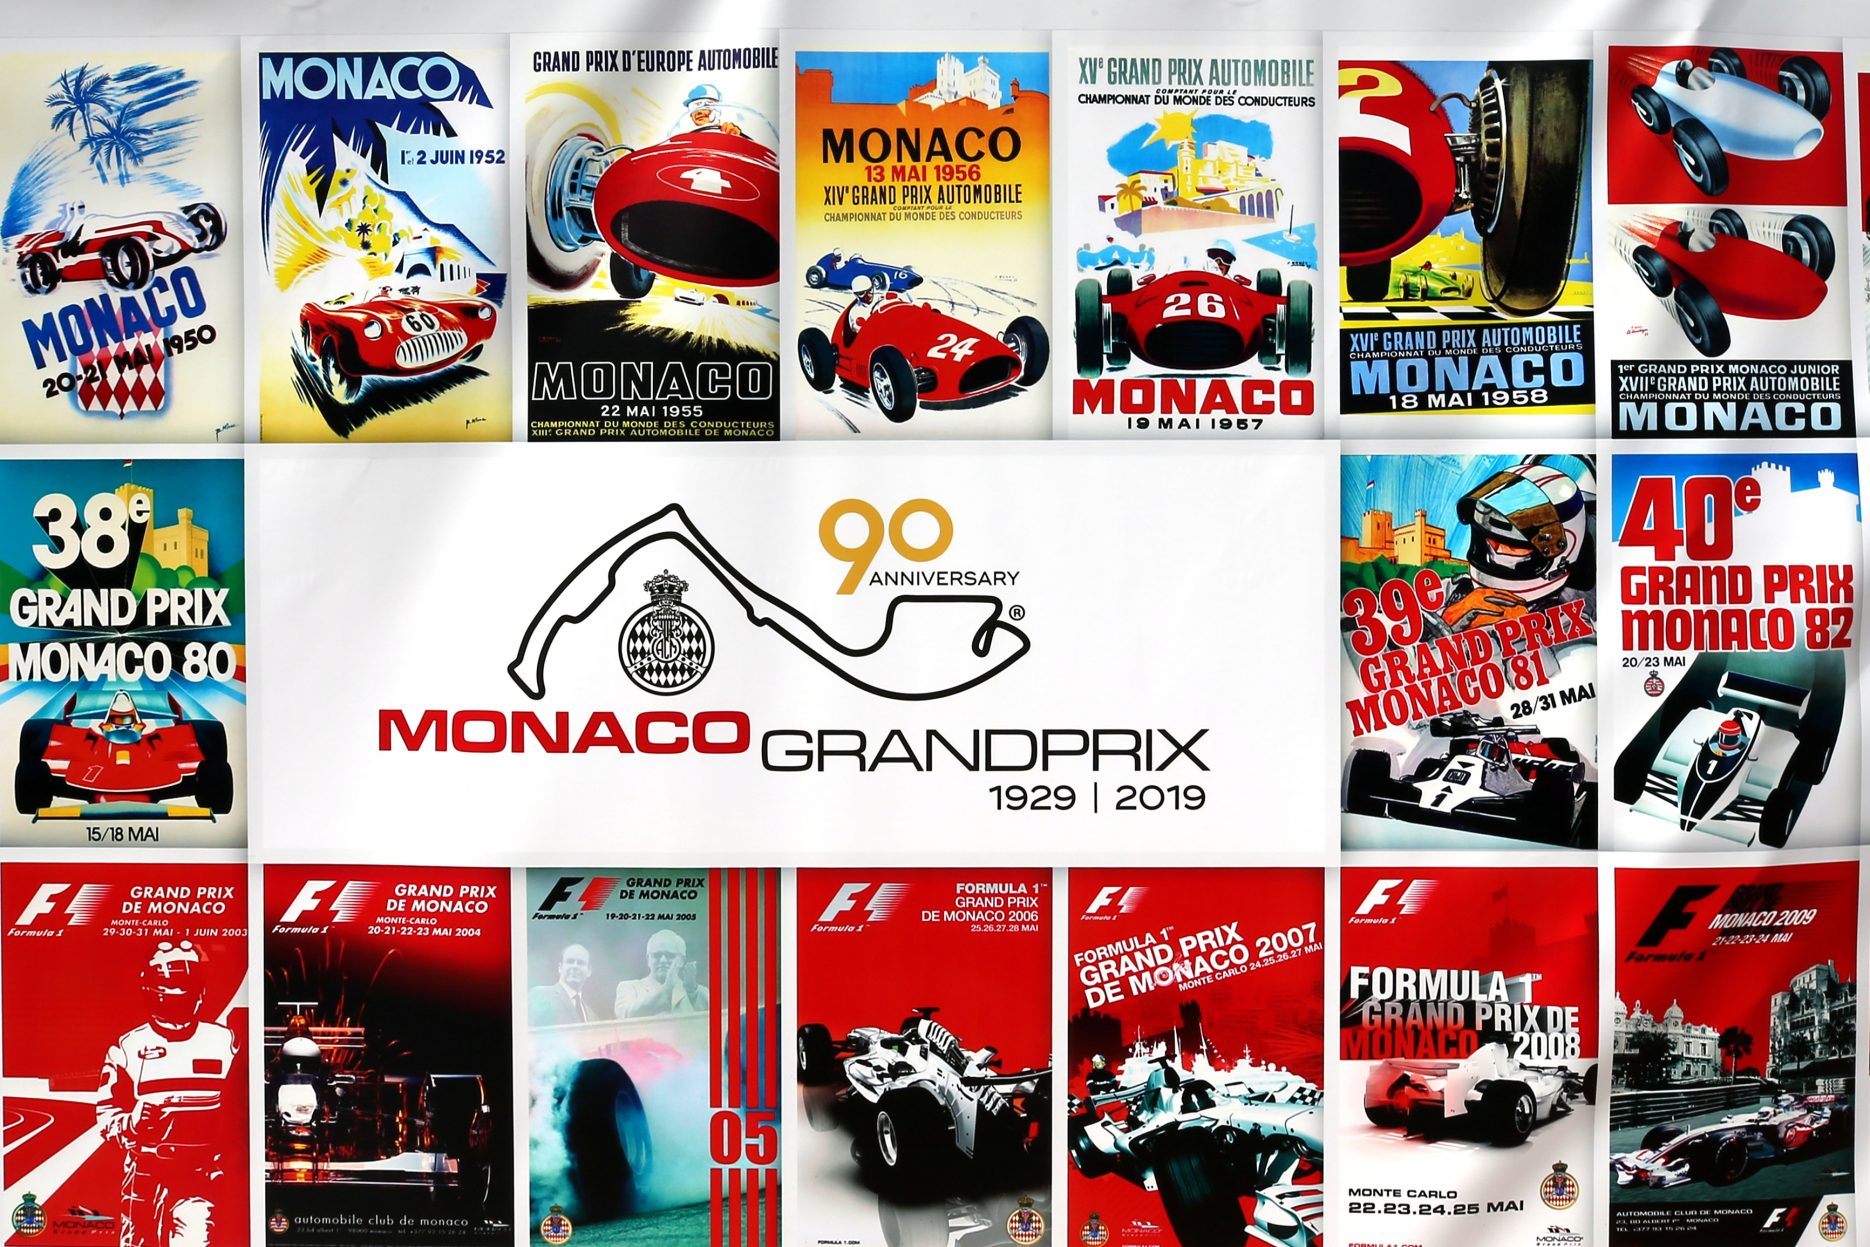 Grand Prix de Monaco 2019